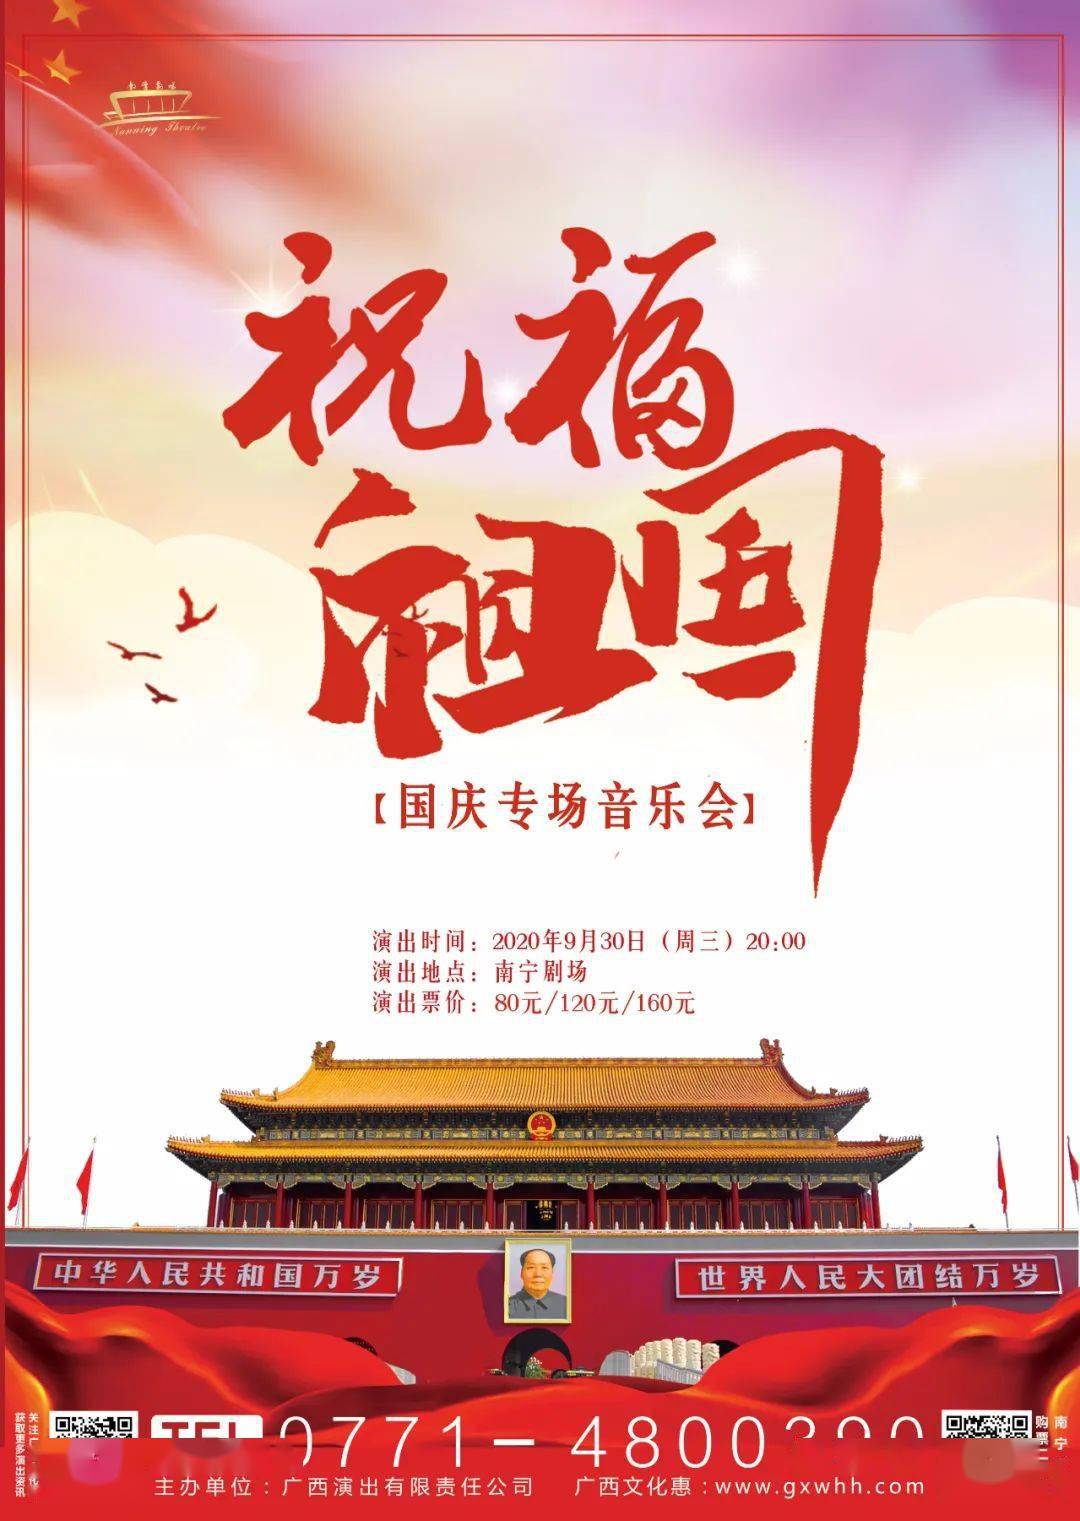 《祝福祖国》庆祝中华人民共和国